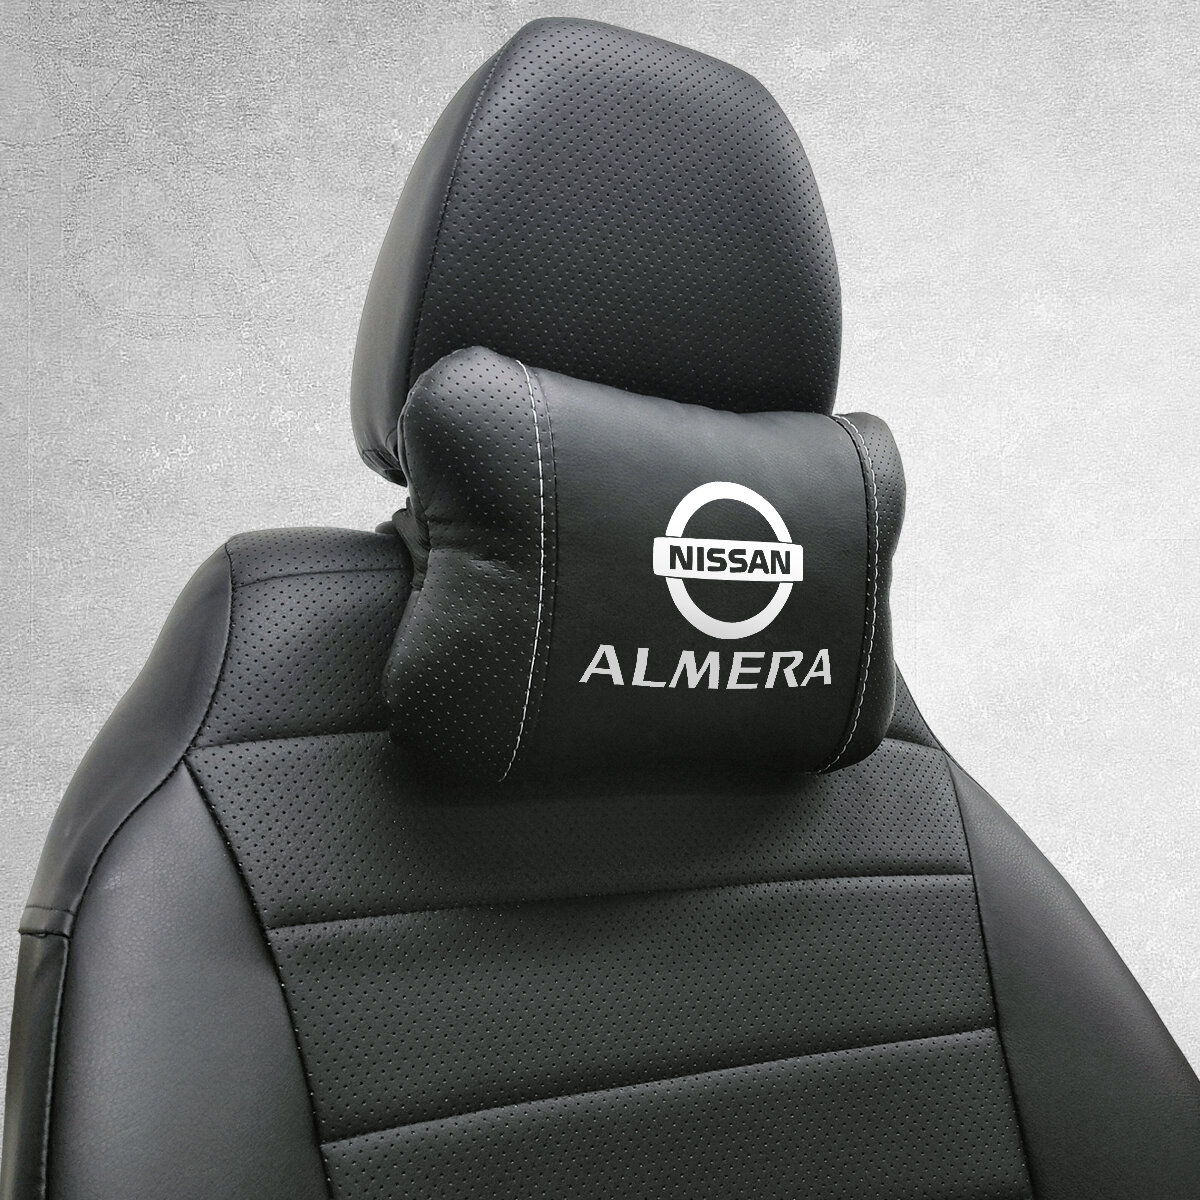 Автомобильная подушка под шею на подголовник эмблема Nissan Almera, для Ниссан Альмера. Подушка для шеи в машину. Подушка на сиденье автомобиля.